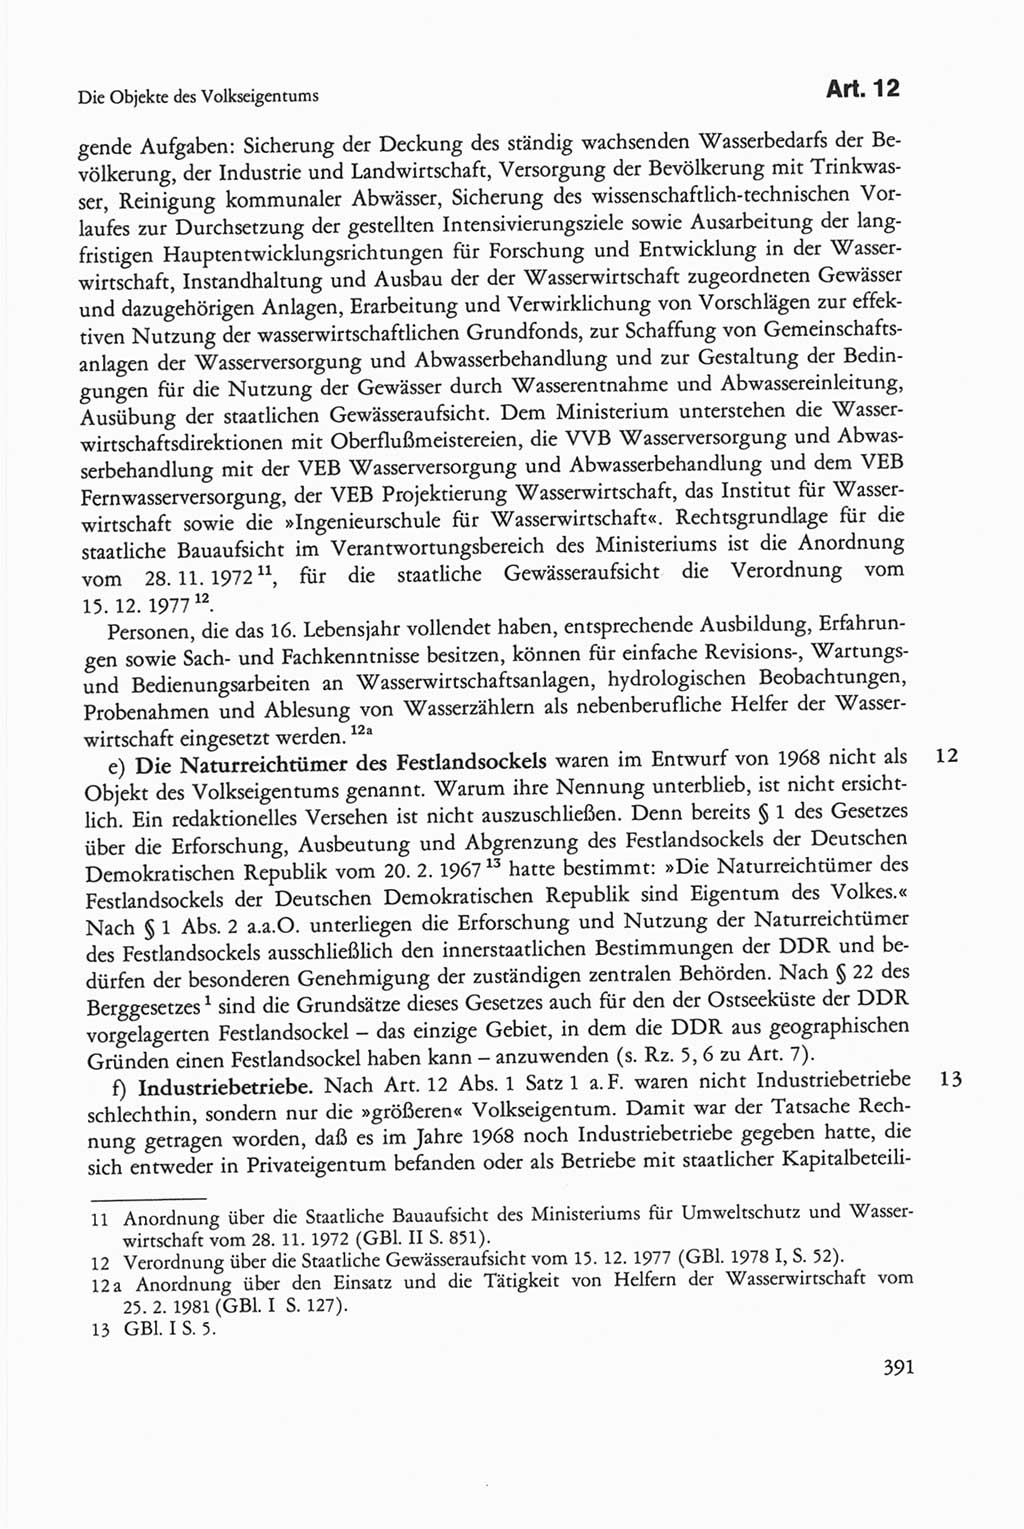 Die sozialistische Verfassung der Deutschen Demokratischen Republik (DDR), Kommentar mit einem Nachtrag 1997, Seite 391 (Soz. Verf. DDR Komm. Nachtr. 1997, S. 391)